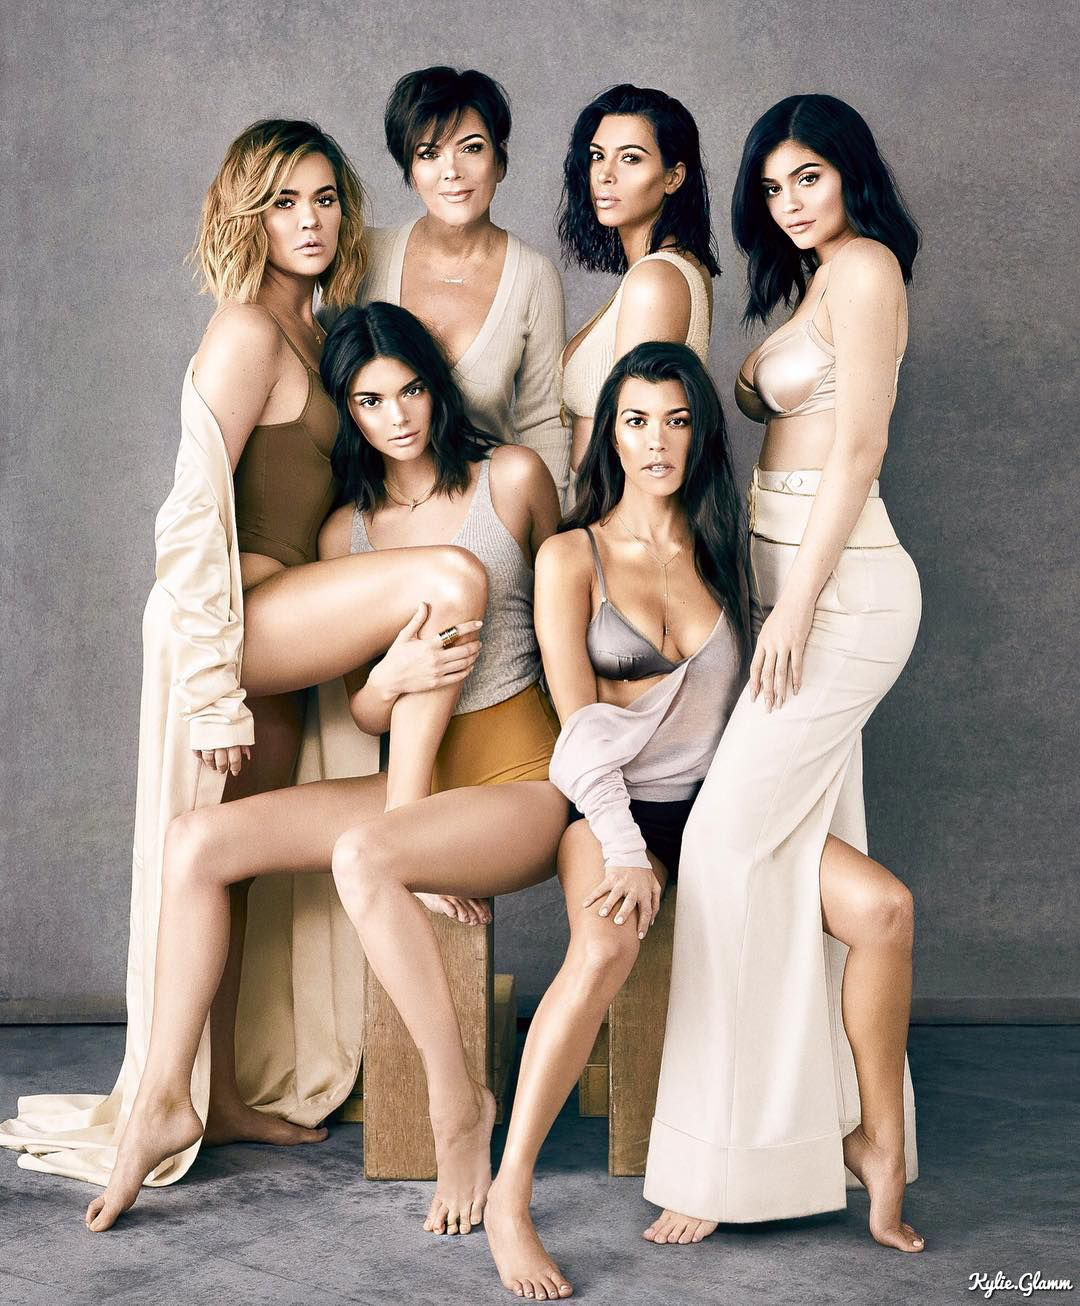 6 cặp anh chị em quyền lực nhất Hollywood: Chị em Hadid, Fanning cực phẩm, nhà Kardashian và Zack & Cody toàn rich kid - Ảnh 1.